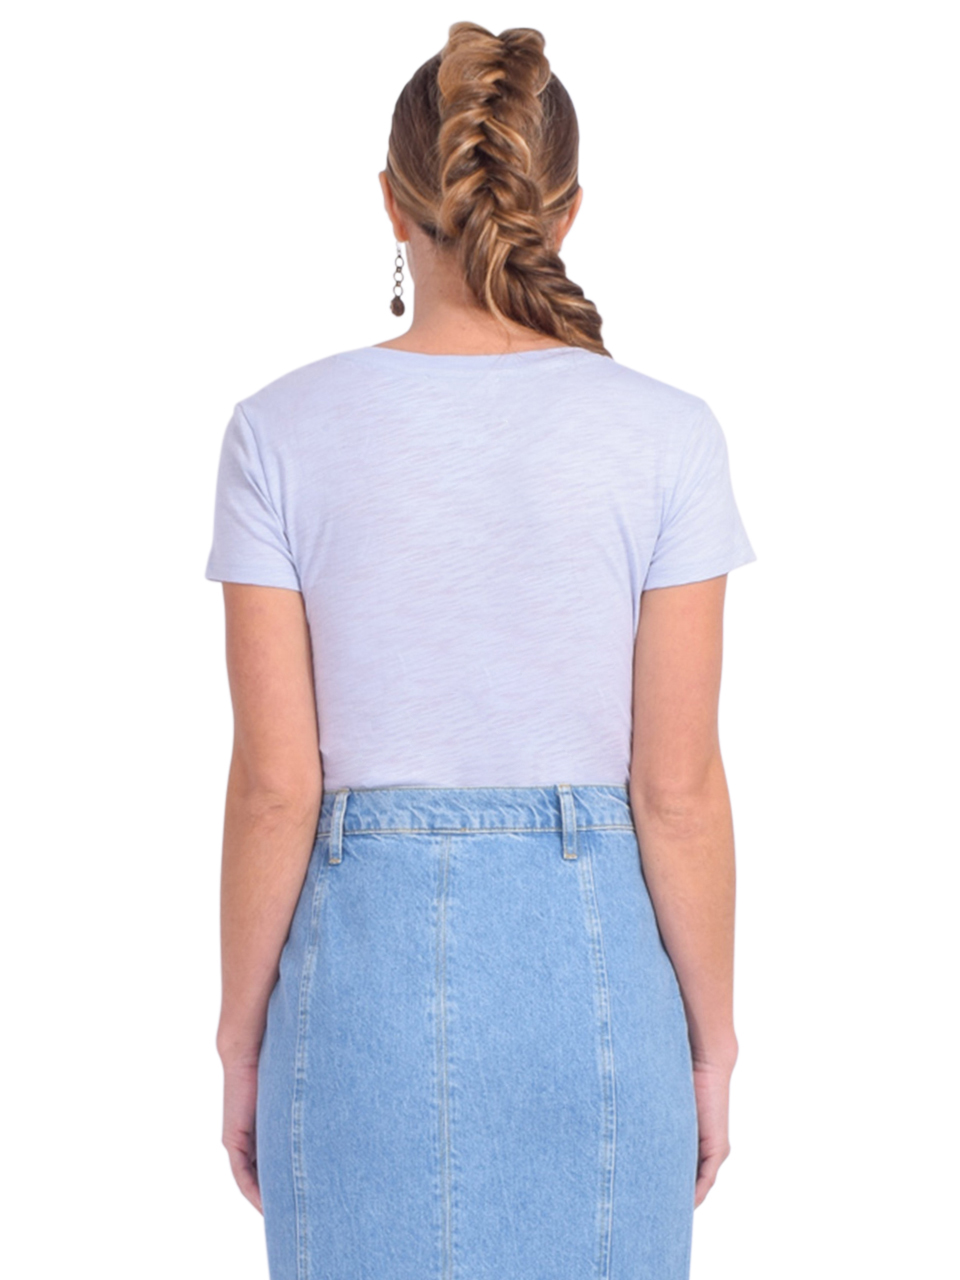 CHRLDR Ava V-Neck Mock Layer T-Shirt in Limestone Blue Back View 